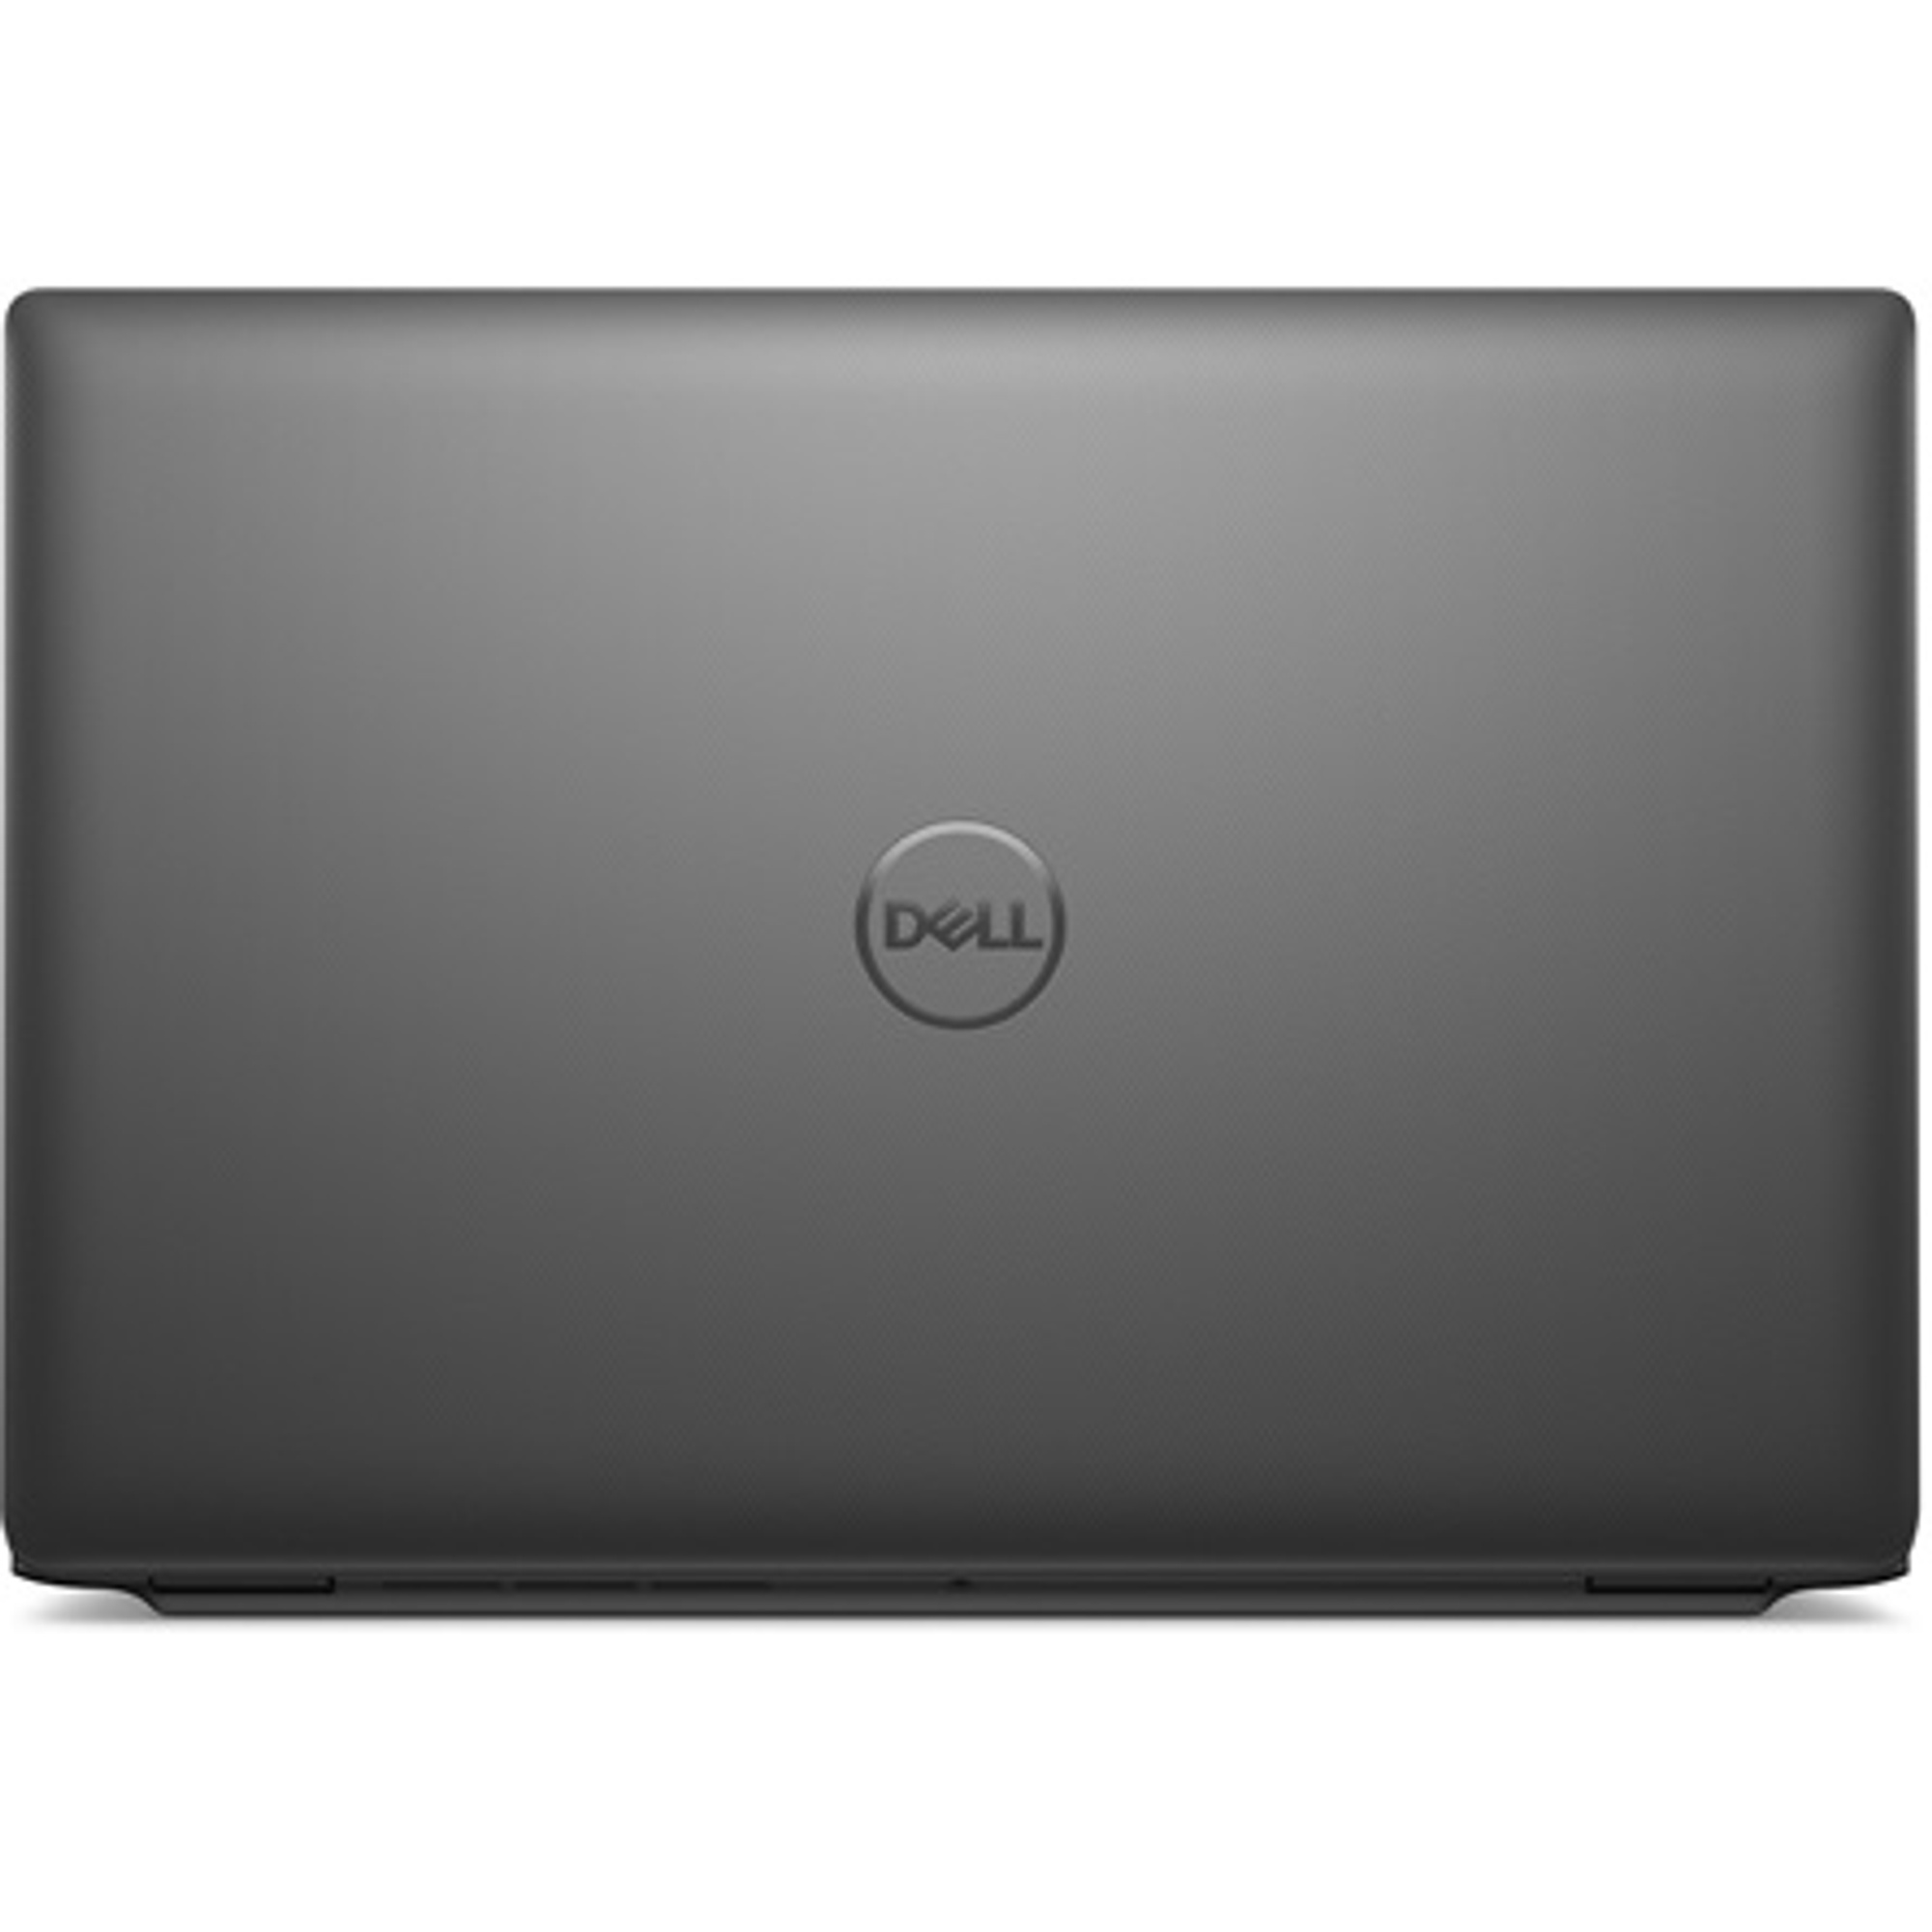 DELL N002L344014EMEA_VP Laptop / Notebook 7